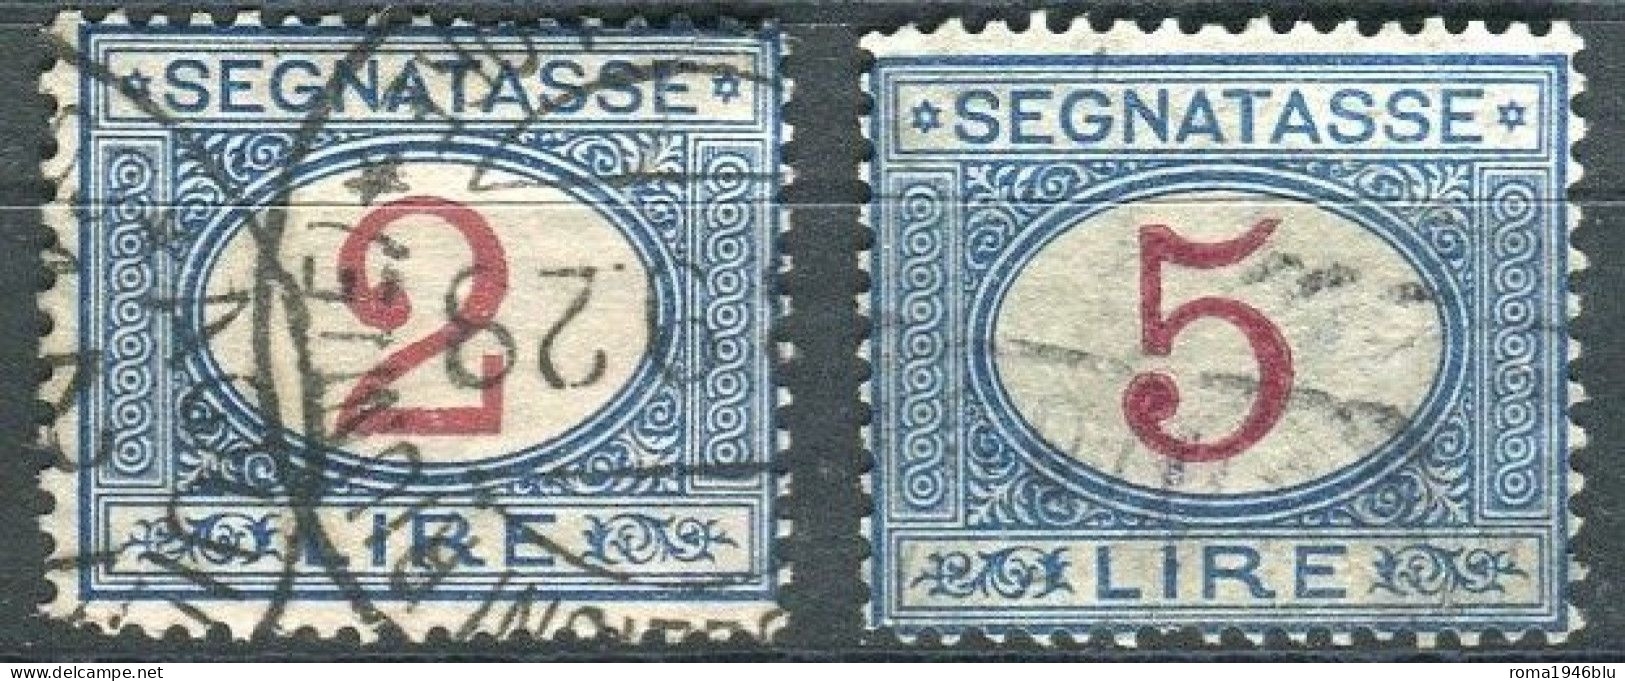 REGNO 1903 SEGNATASSE 2 VALORI USATI ANNULLI ORIGINALI - Postage Due